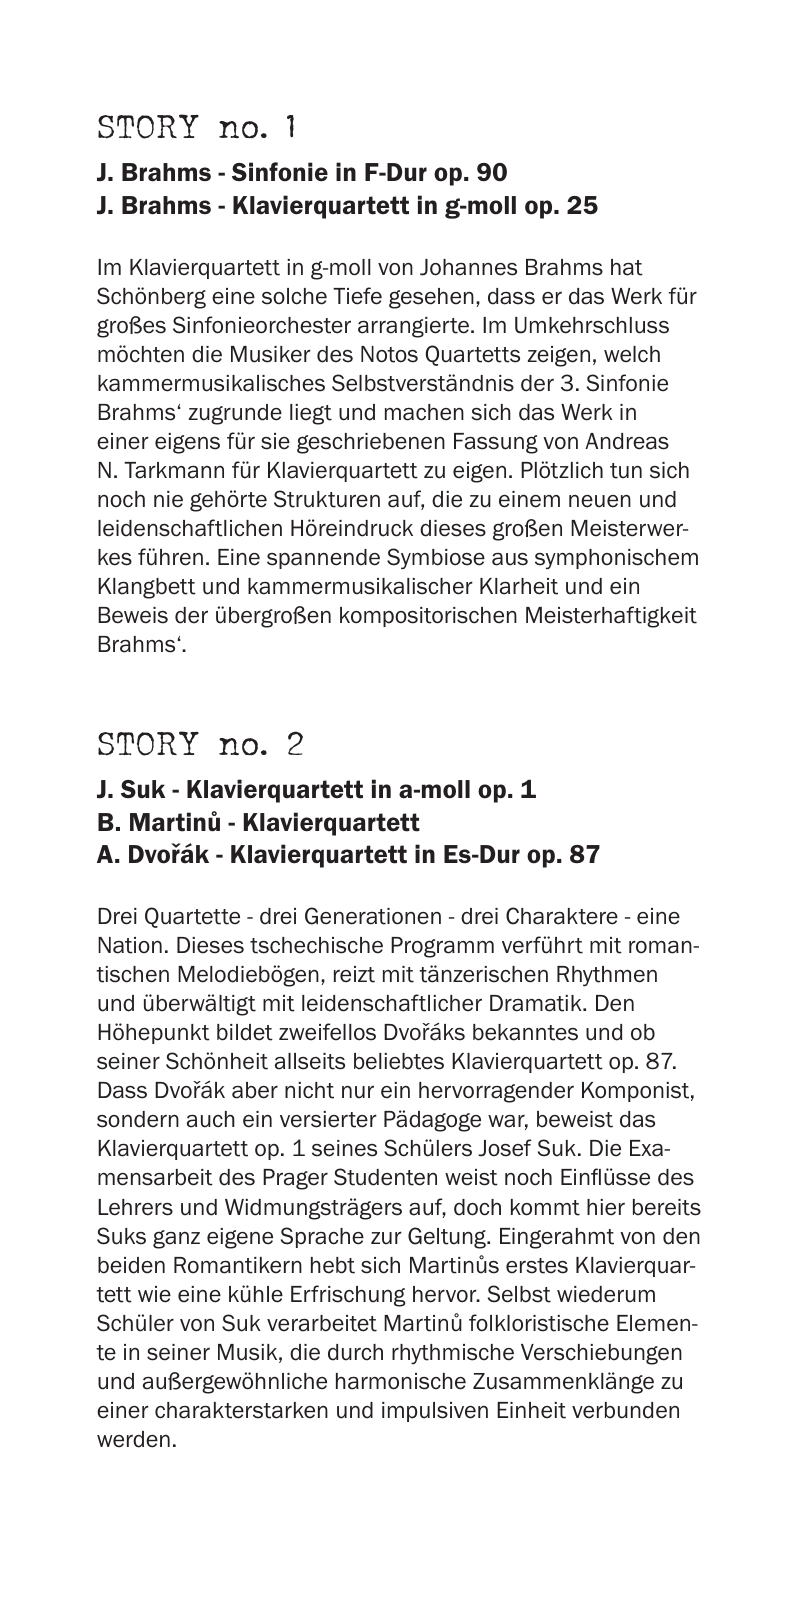 Vorschau Notos Quartett Programme 18/19/20 Seite 9